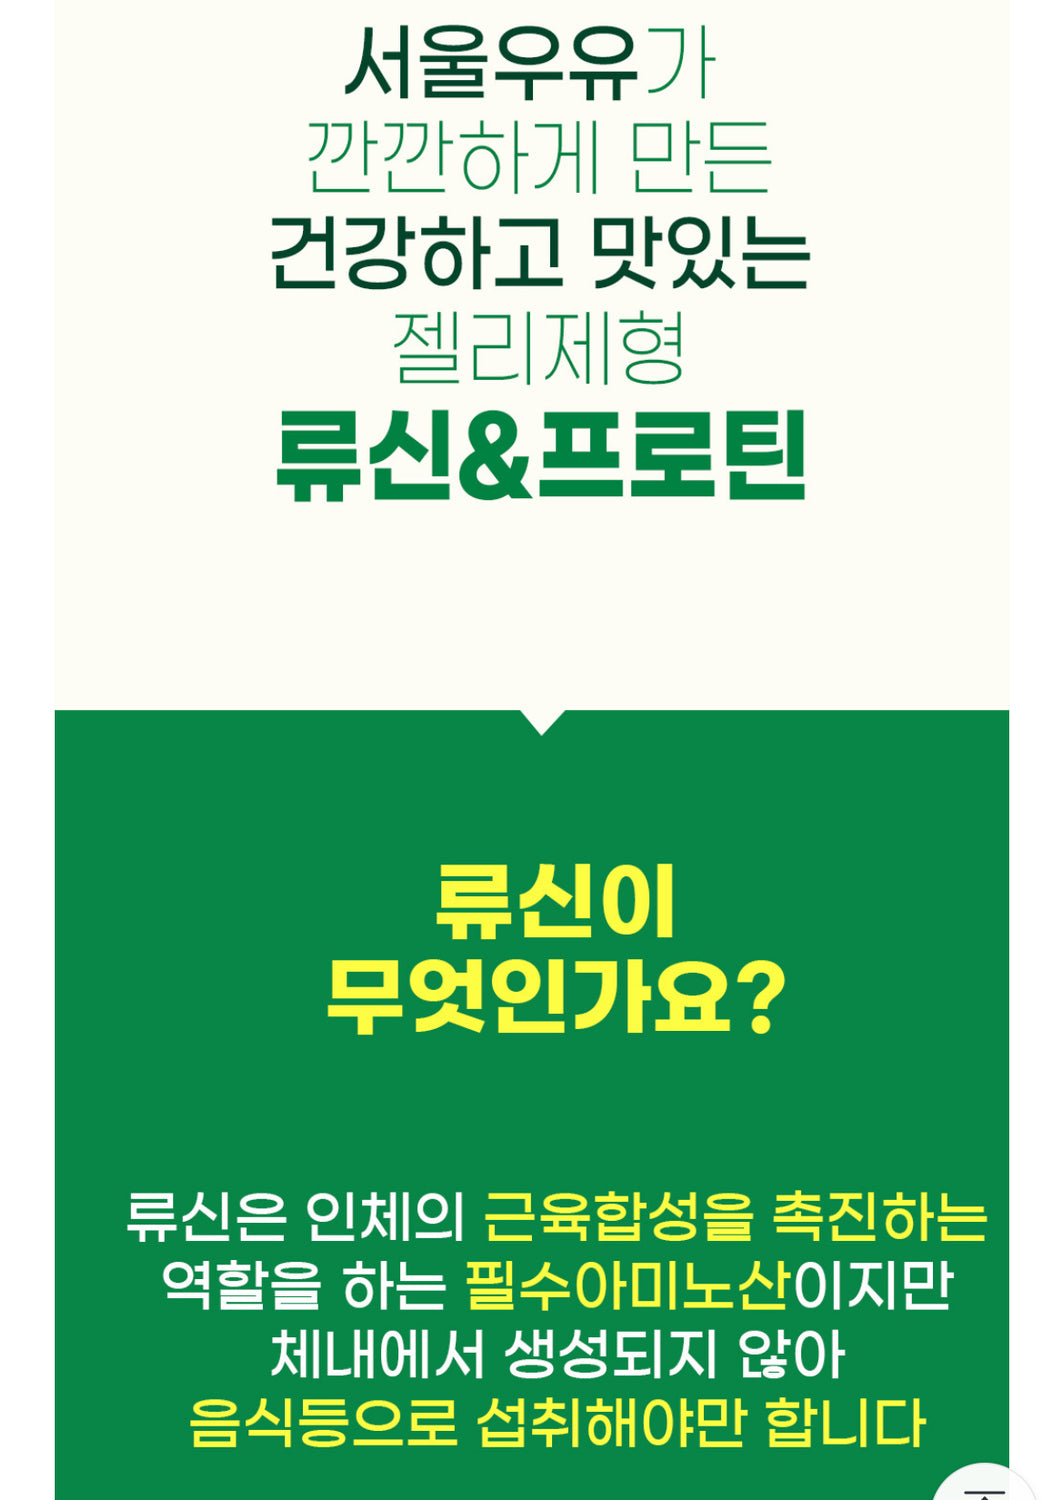 Seoul Milk Colostrum Protien & Lueicine Jelly Sticks _공구구성 (4/1-4/3/24)